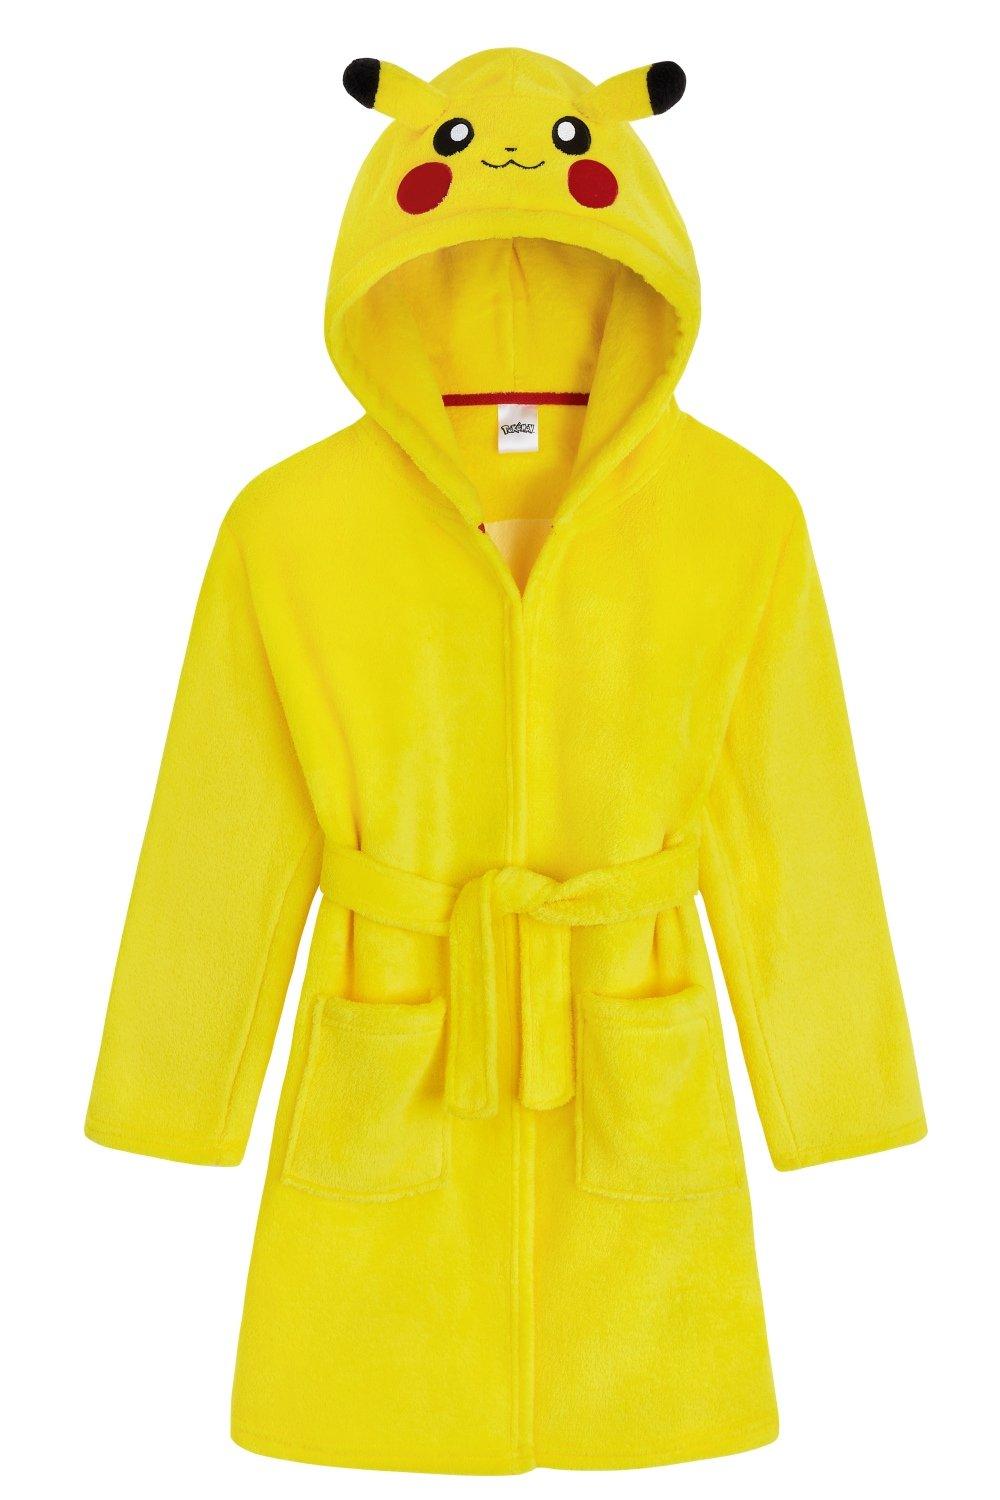 Пышный халат с капюшоном Pokemon, желтый значки пикачу для девочки